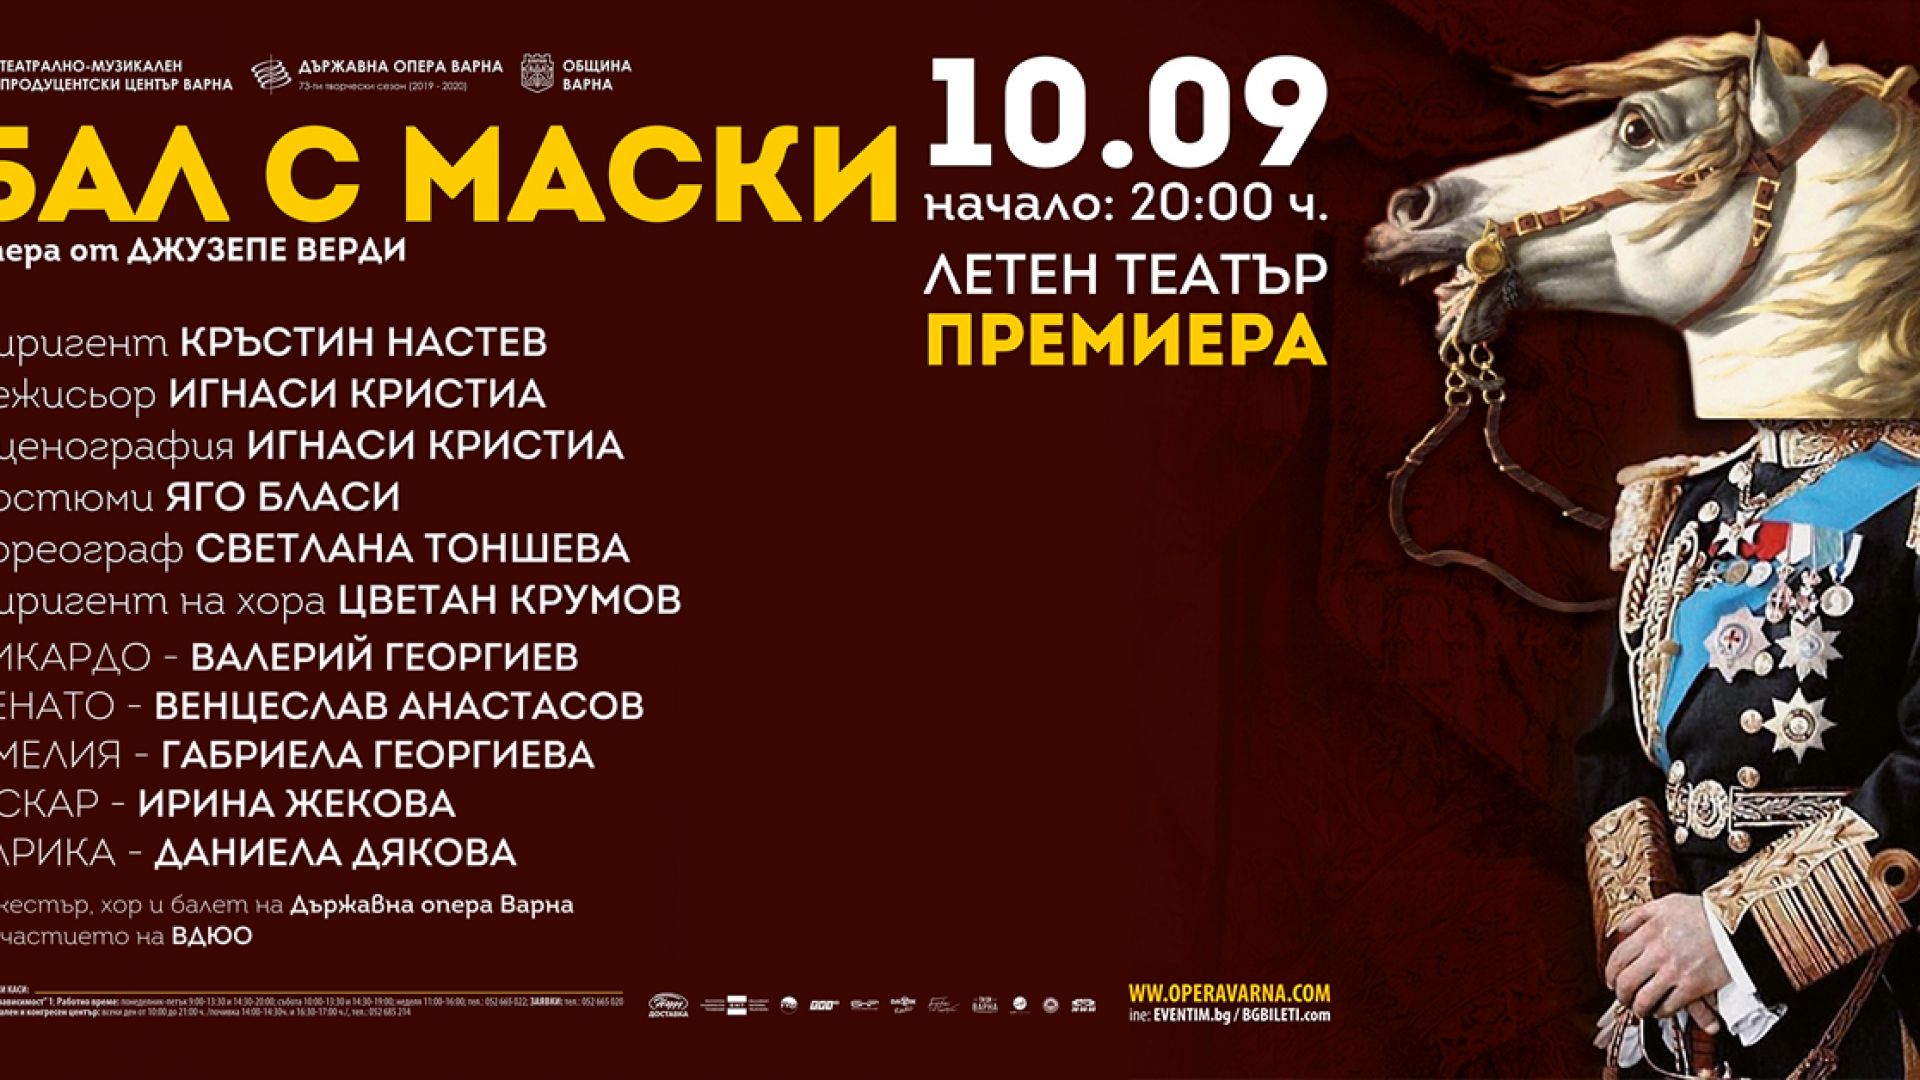 Испански режисьор поставя операта "Бал с маски" във Варна